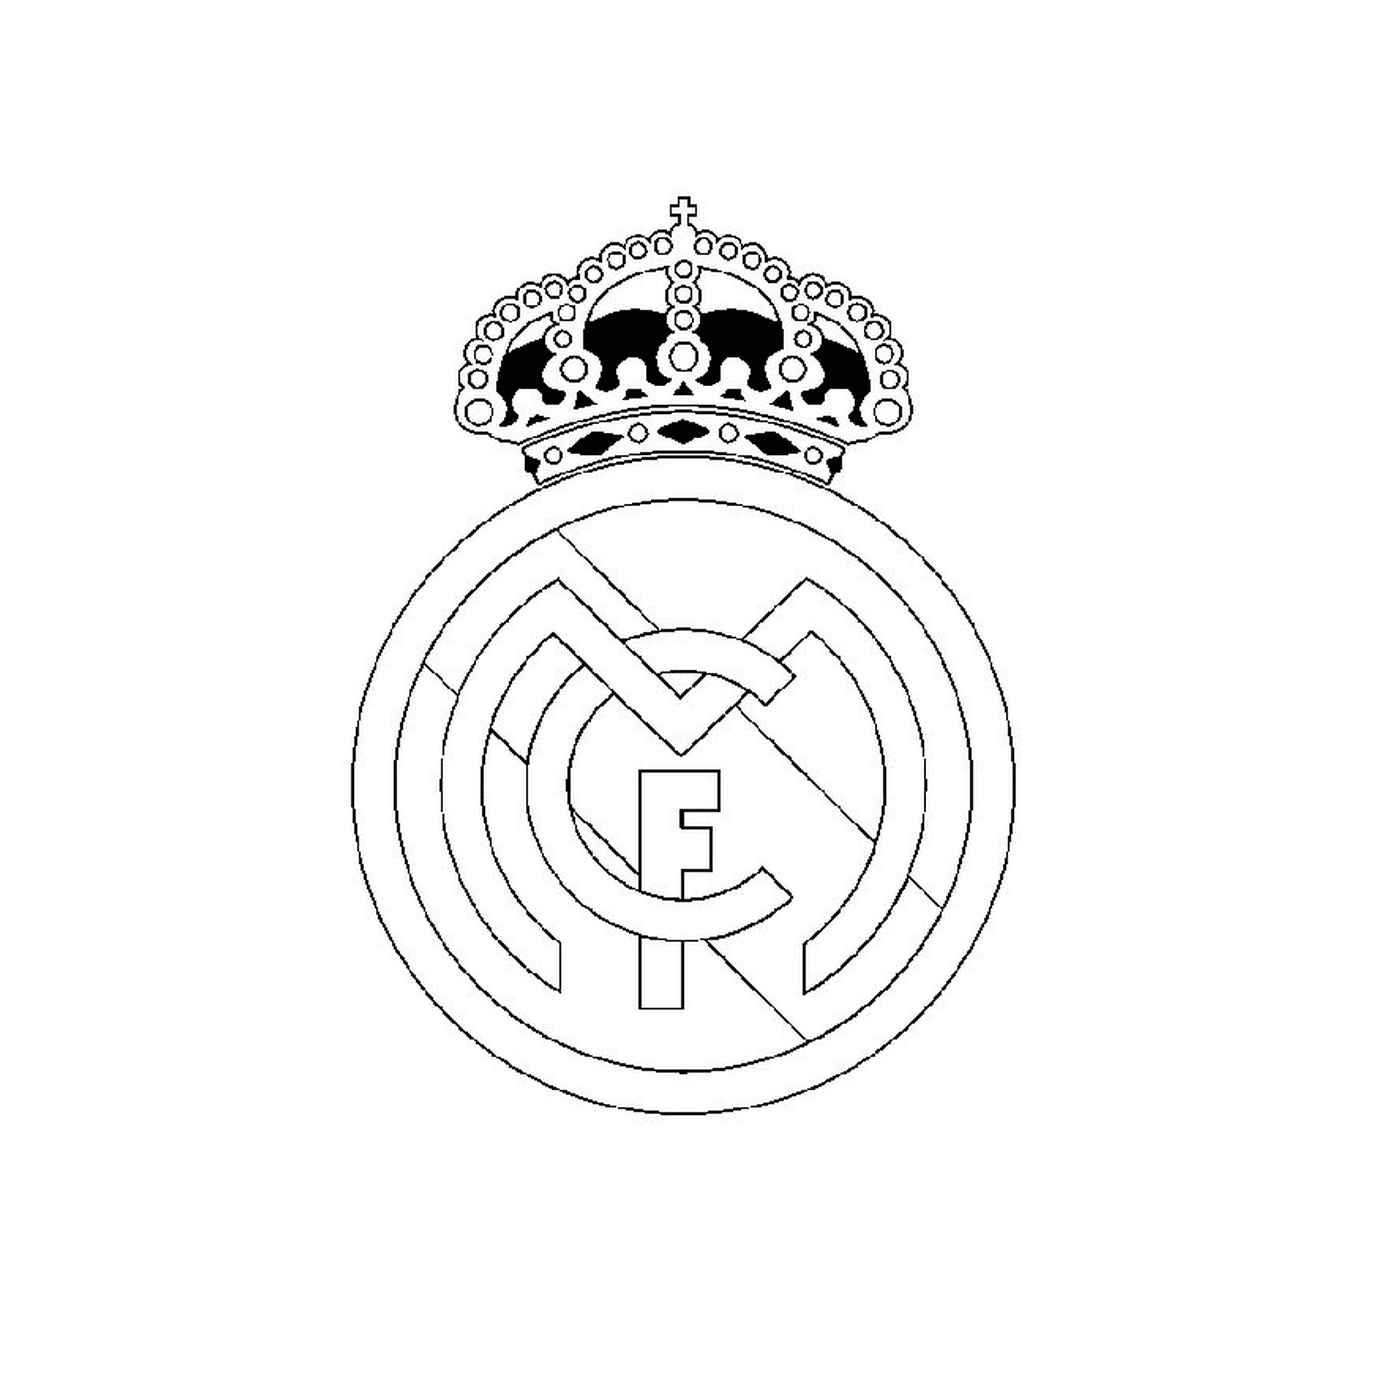   Logo du Real Madrid 